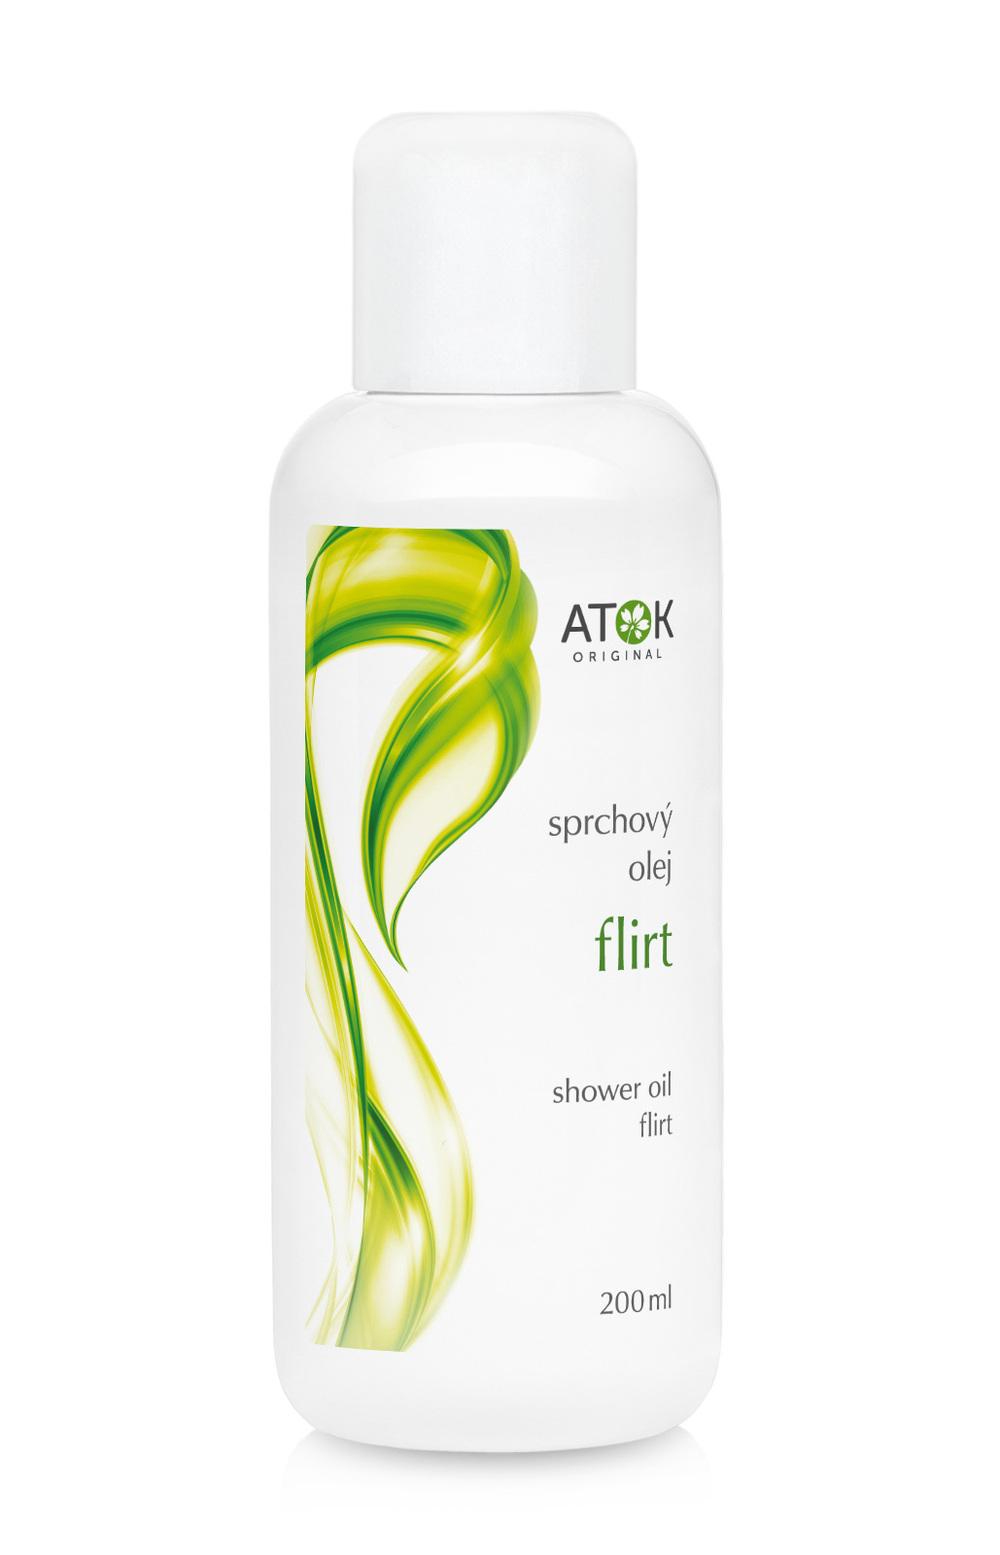 Sprchový olej Flirt - Original ATOK Obsah: 200 ml